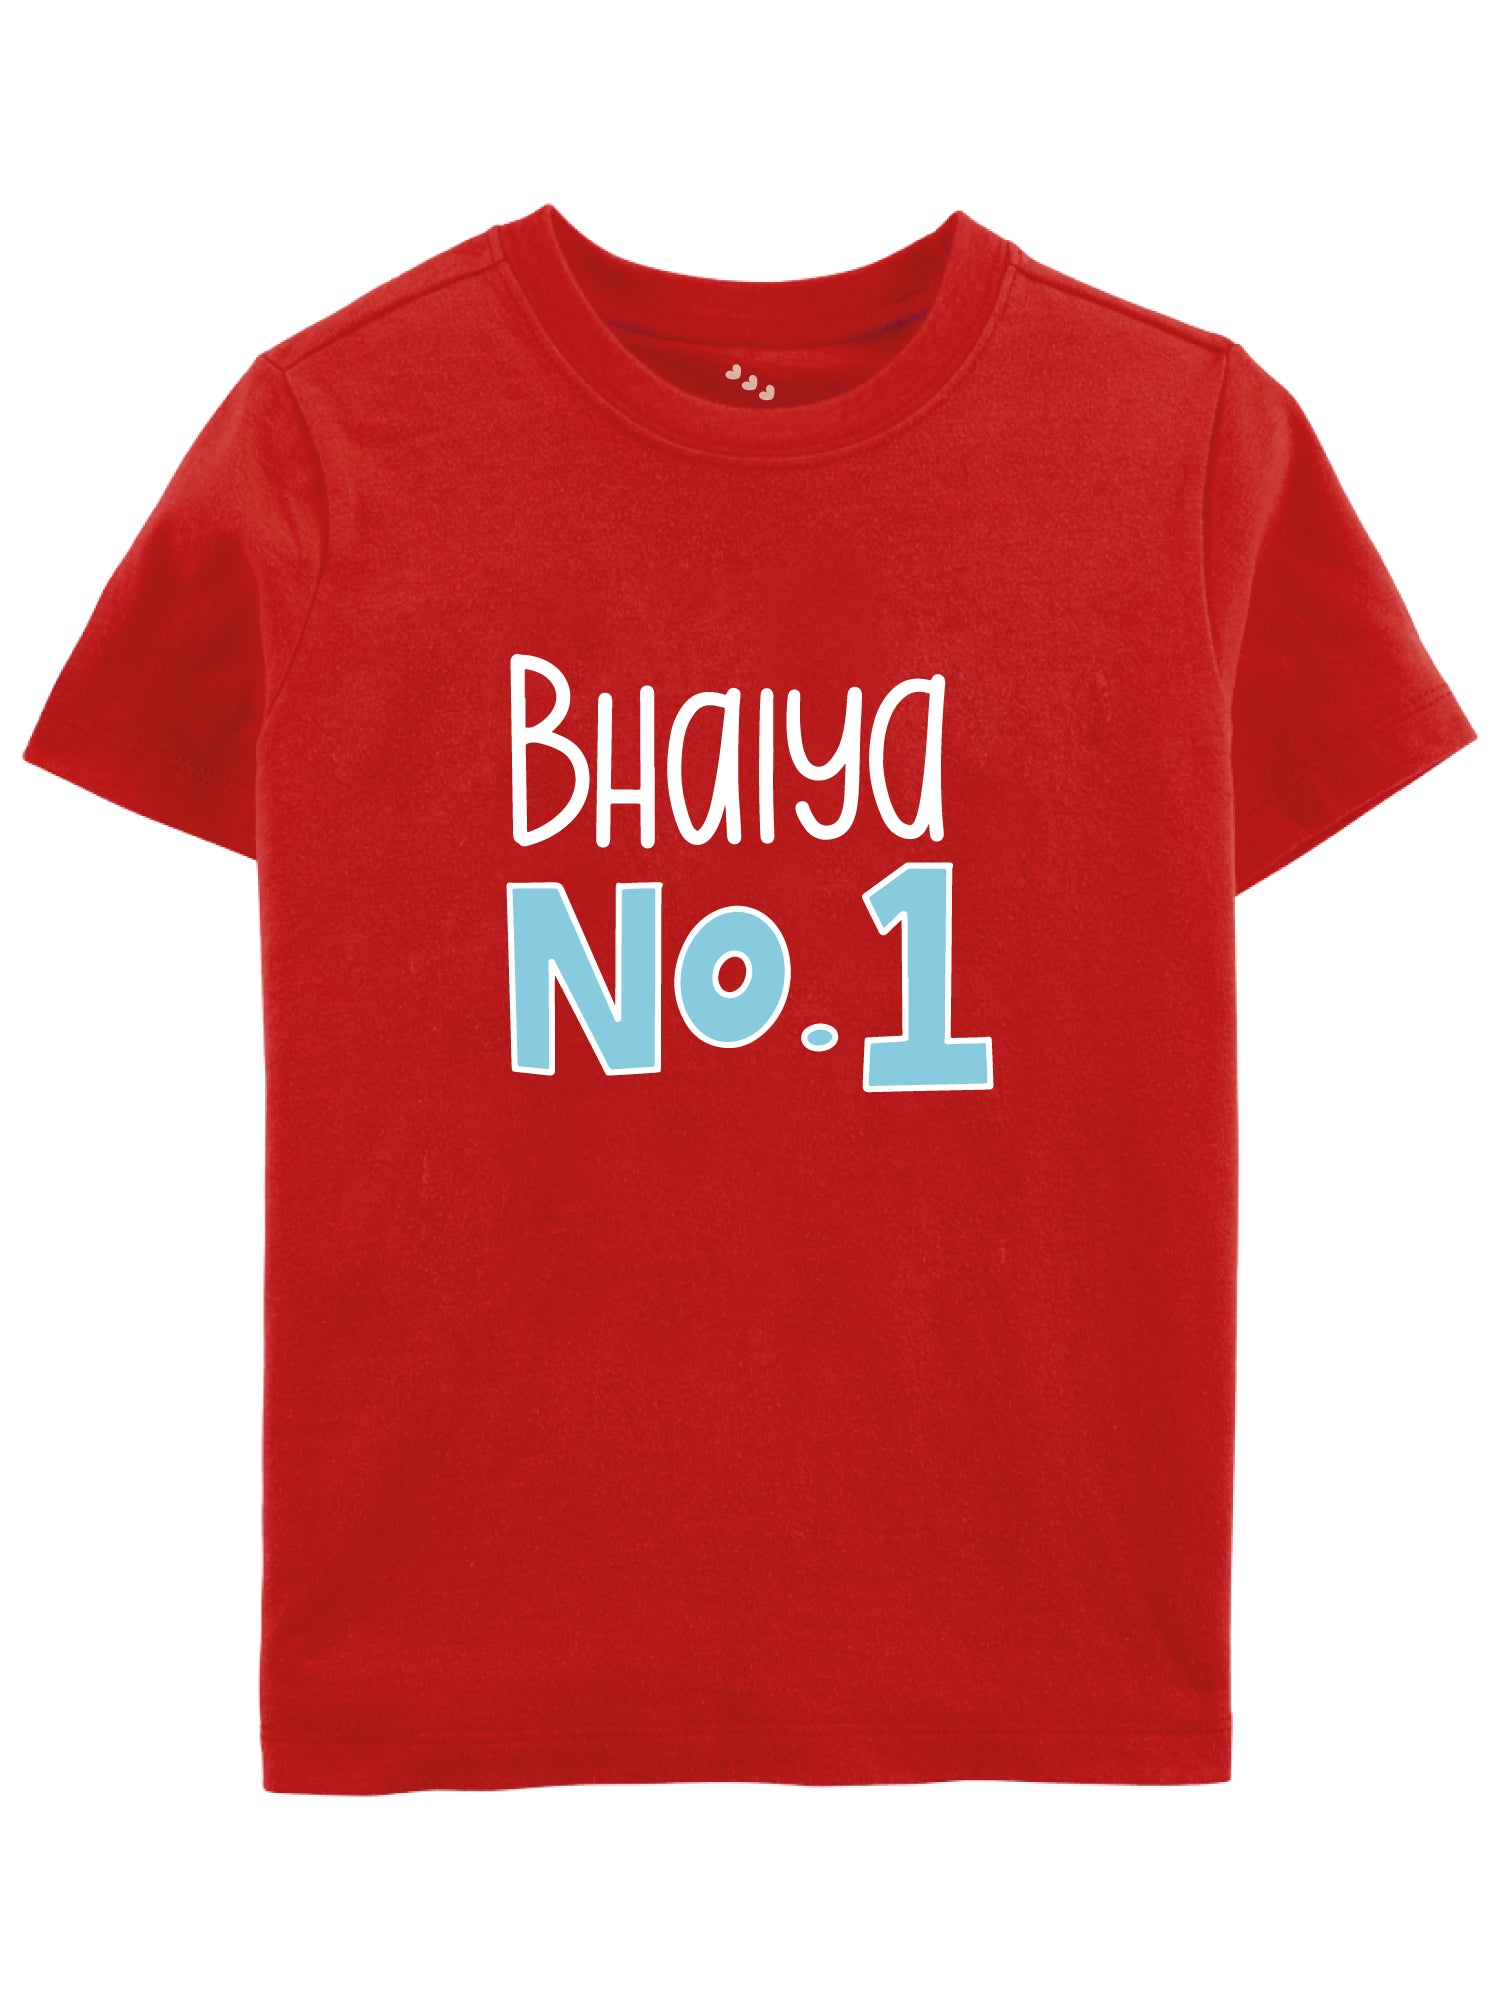 Bhaiya No 1 - Tshirt